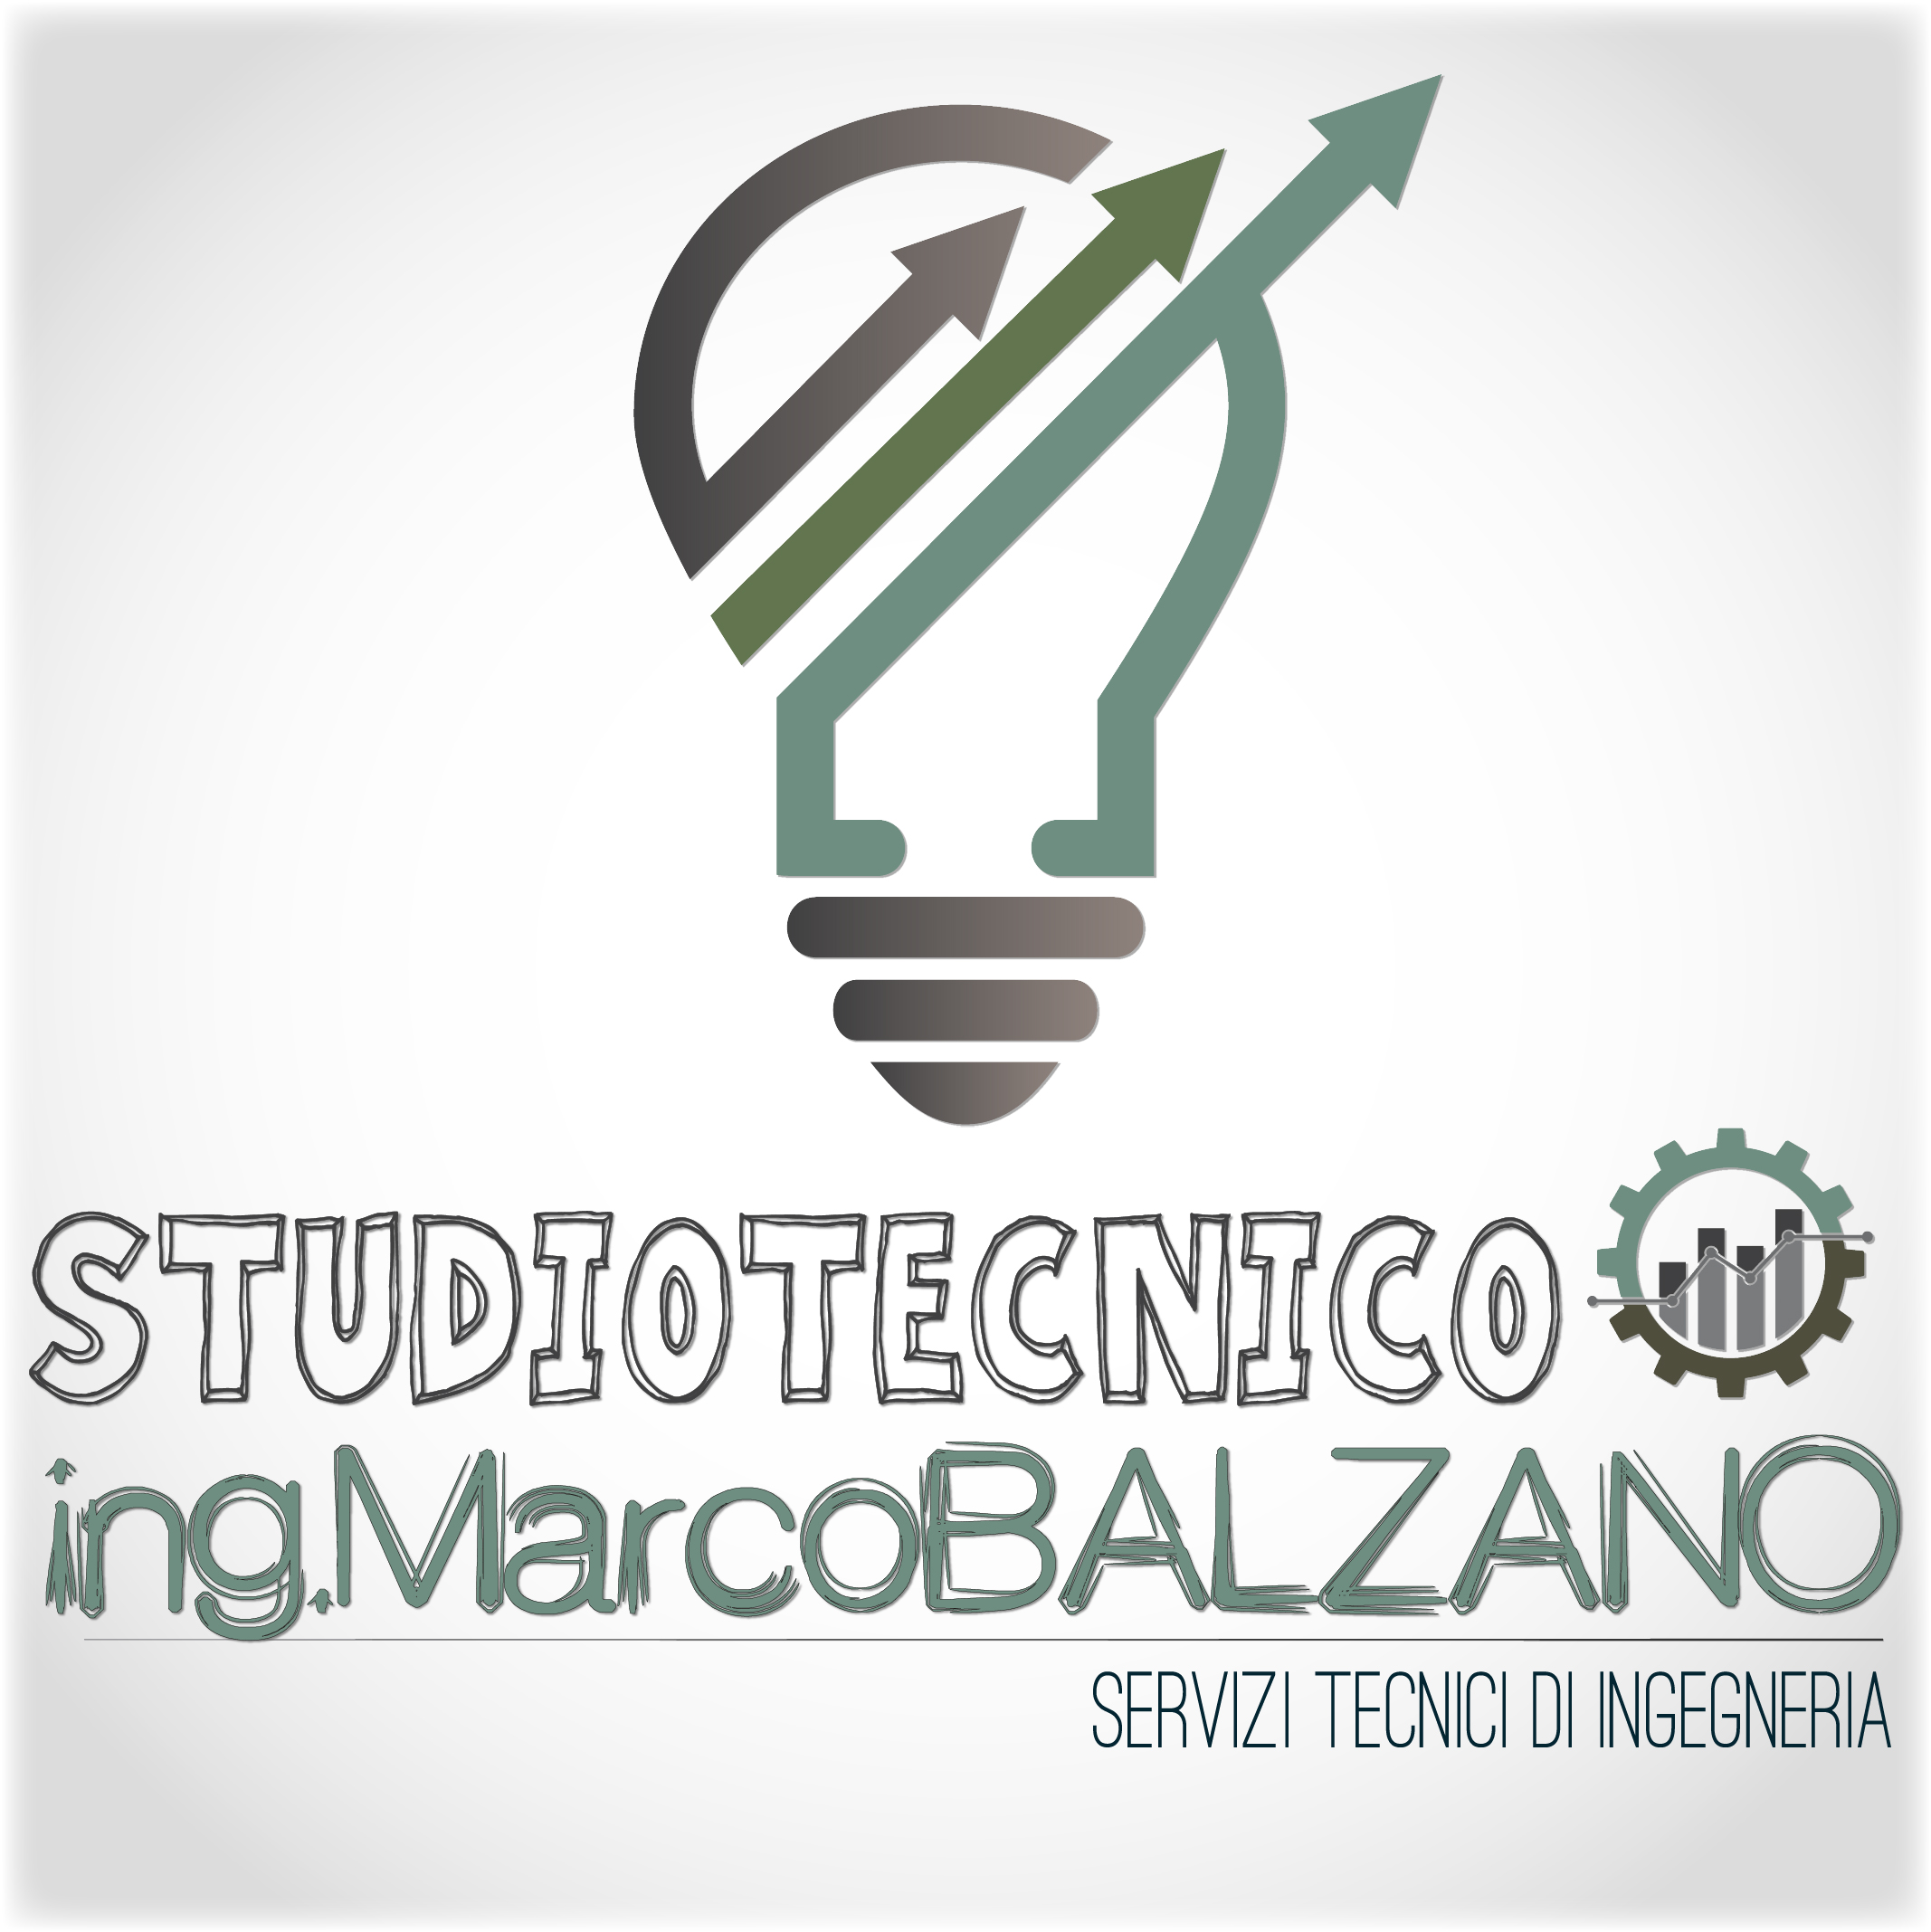 Studiotecnico Ing.balzano